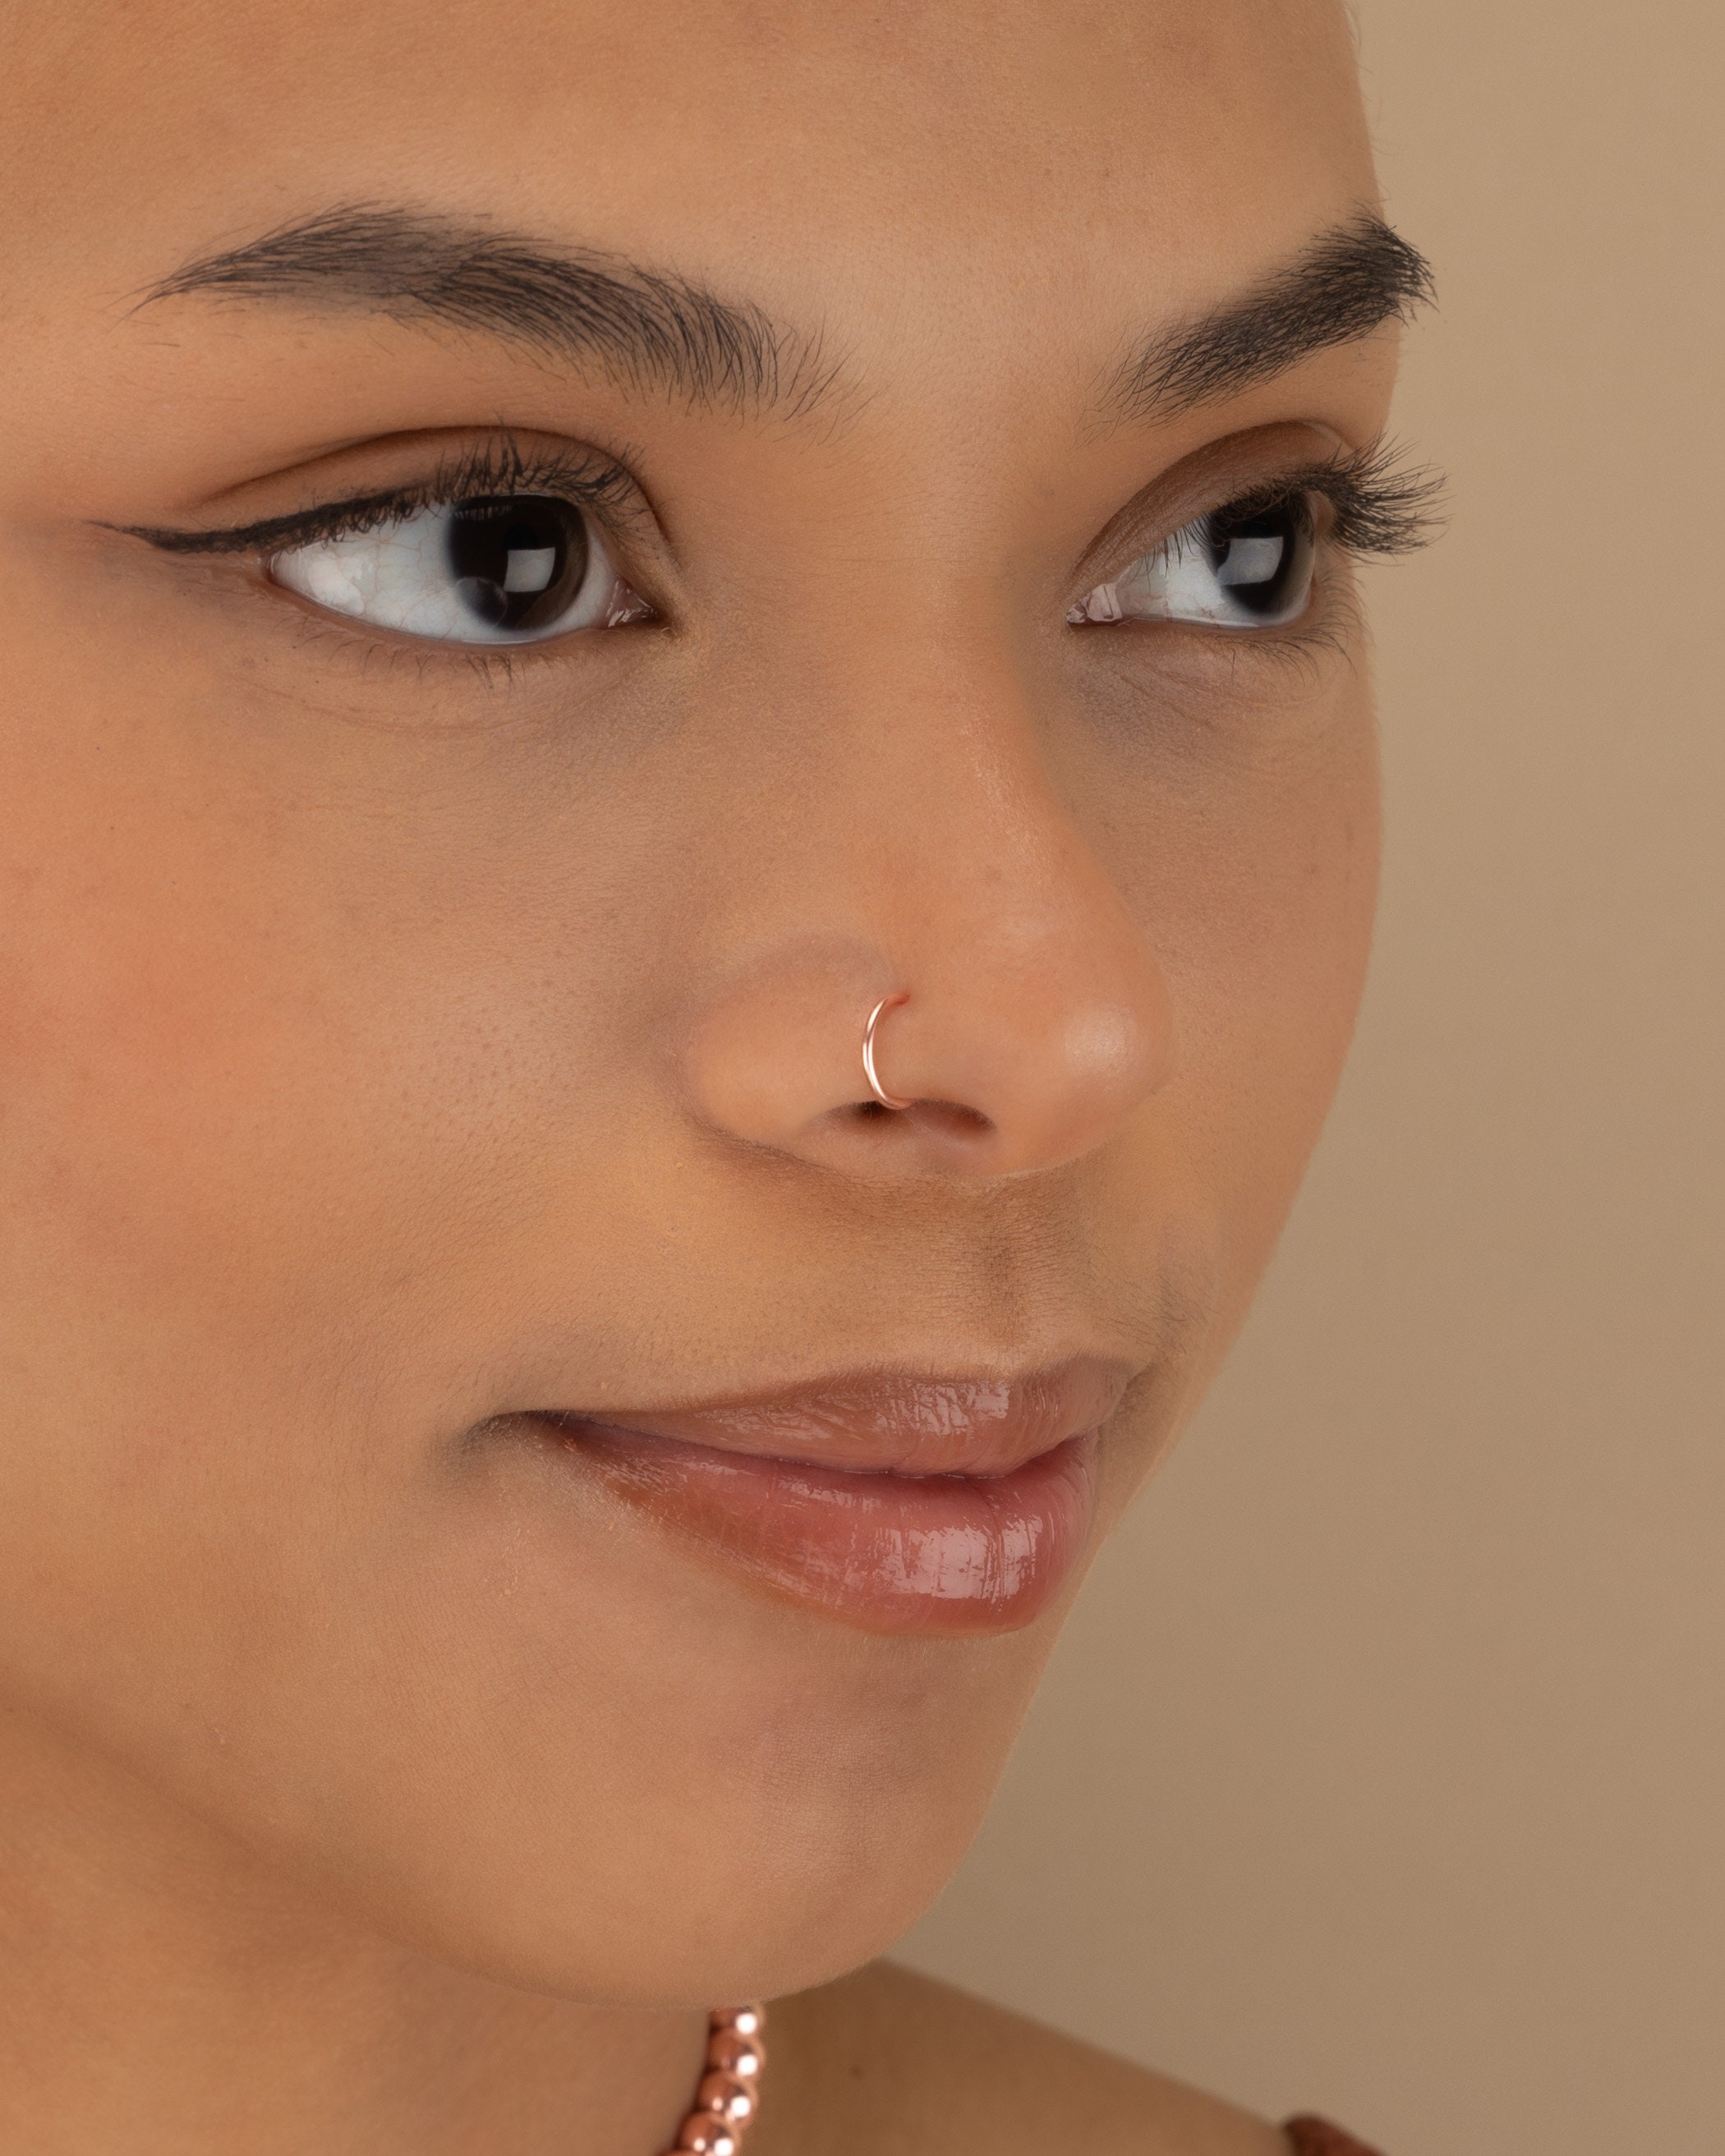 Amazon.com: 14k Rose Gold Filled Adjustable Metal Hoop Nose Ring - 24 Gauge  5-6mm : Handmade Products